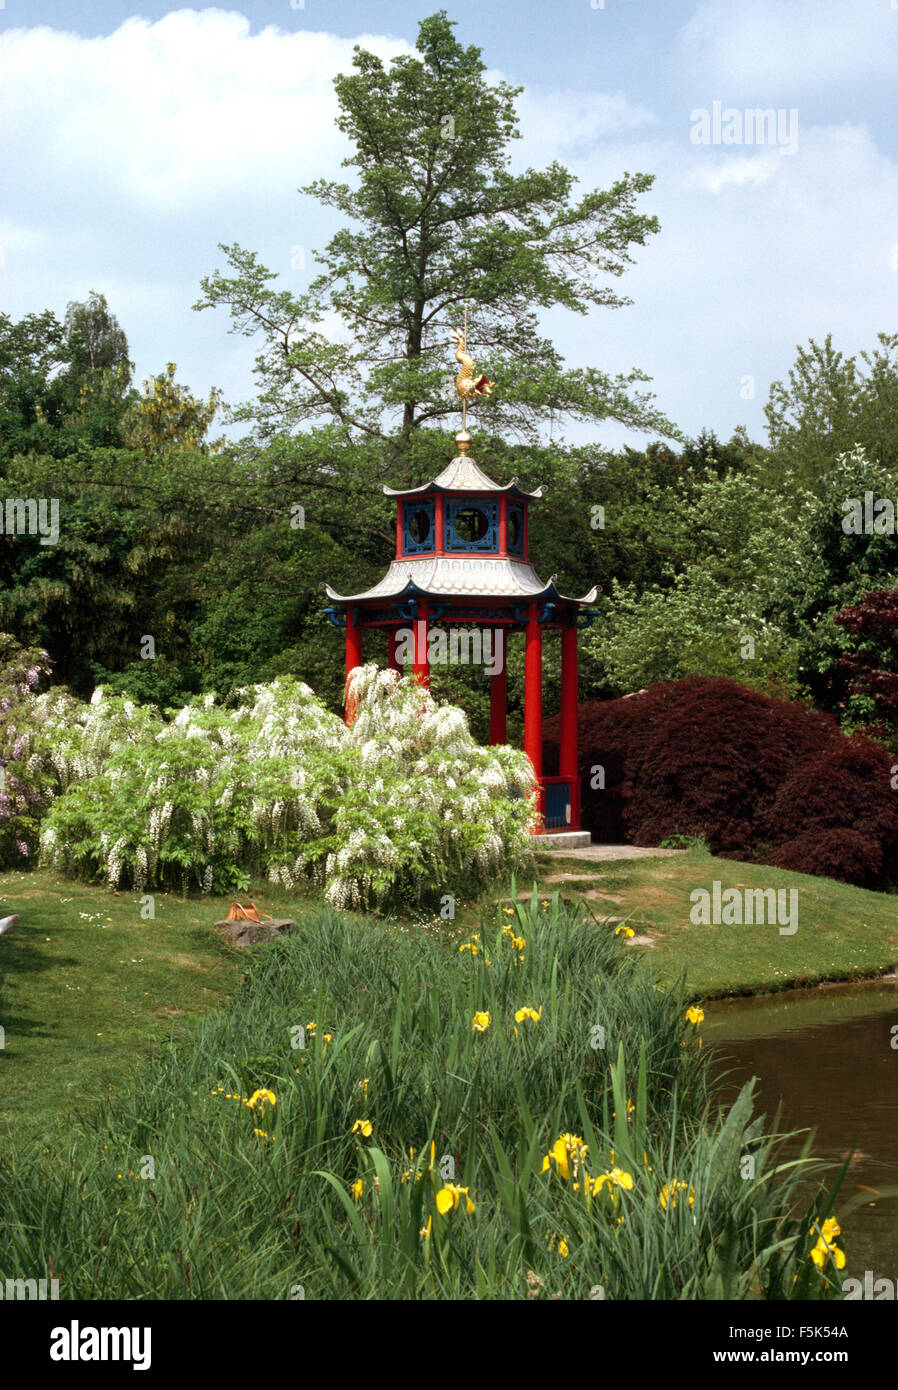 Iris gialla accanto al laghetto in giardino con il glicine bianco cresciuto come un arbusto accanto a un rosso pagoda cinese Foto Stock